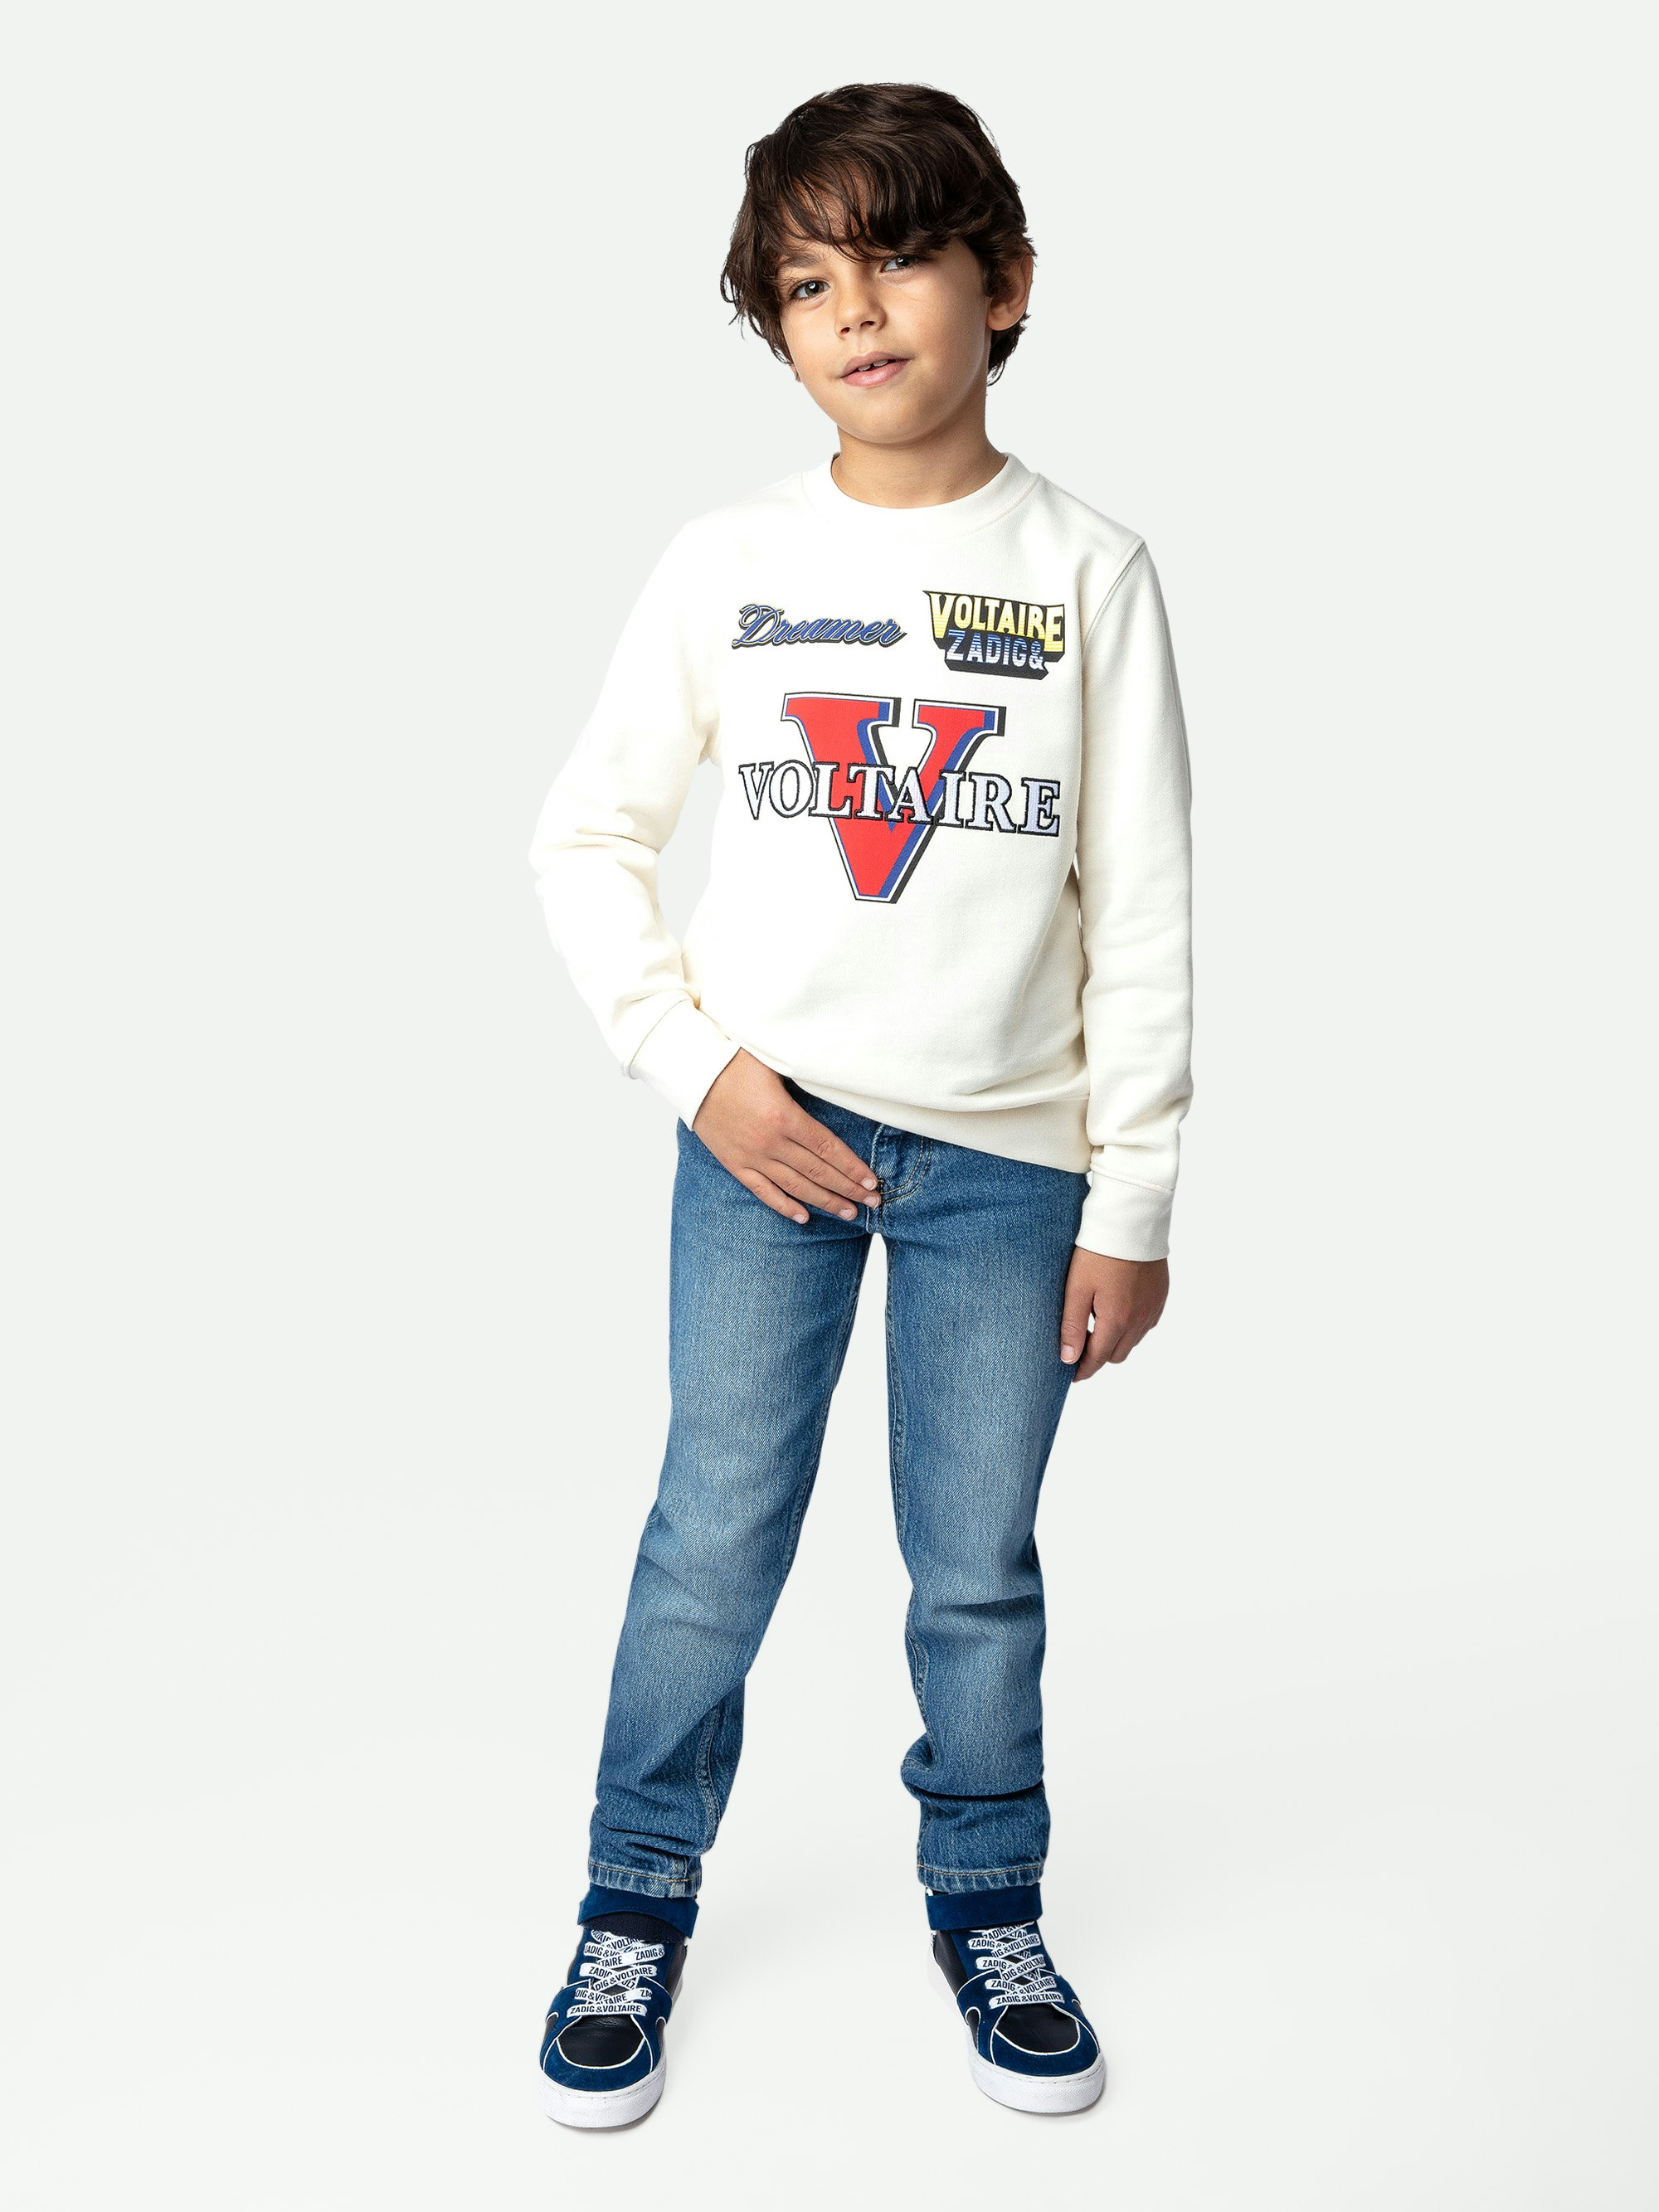 Sweatshirt Simba Garçon - Sweatshirt garçon en coton molletonné écru orné d'illustrations, broderies et coudes rembourrées.